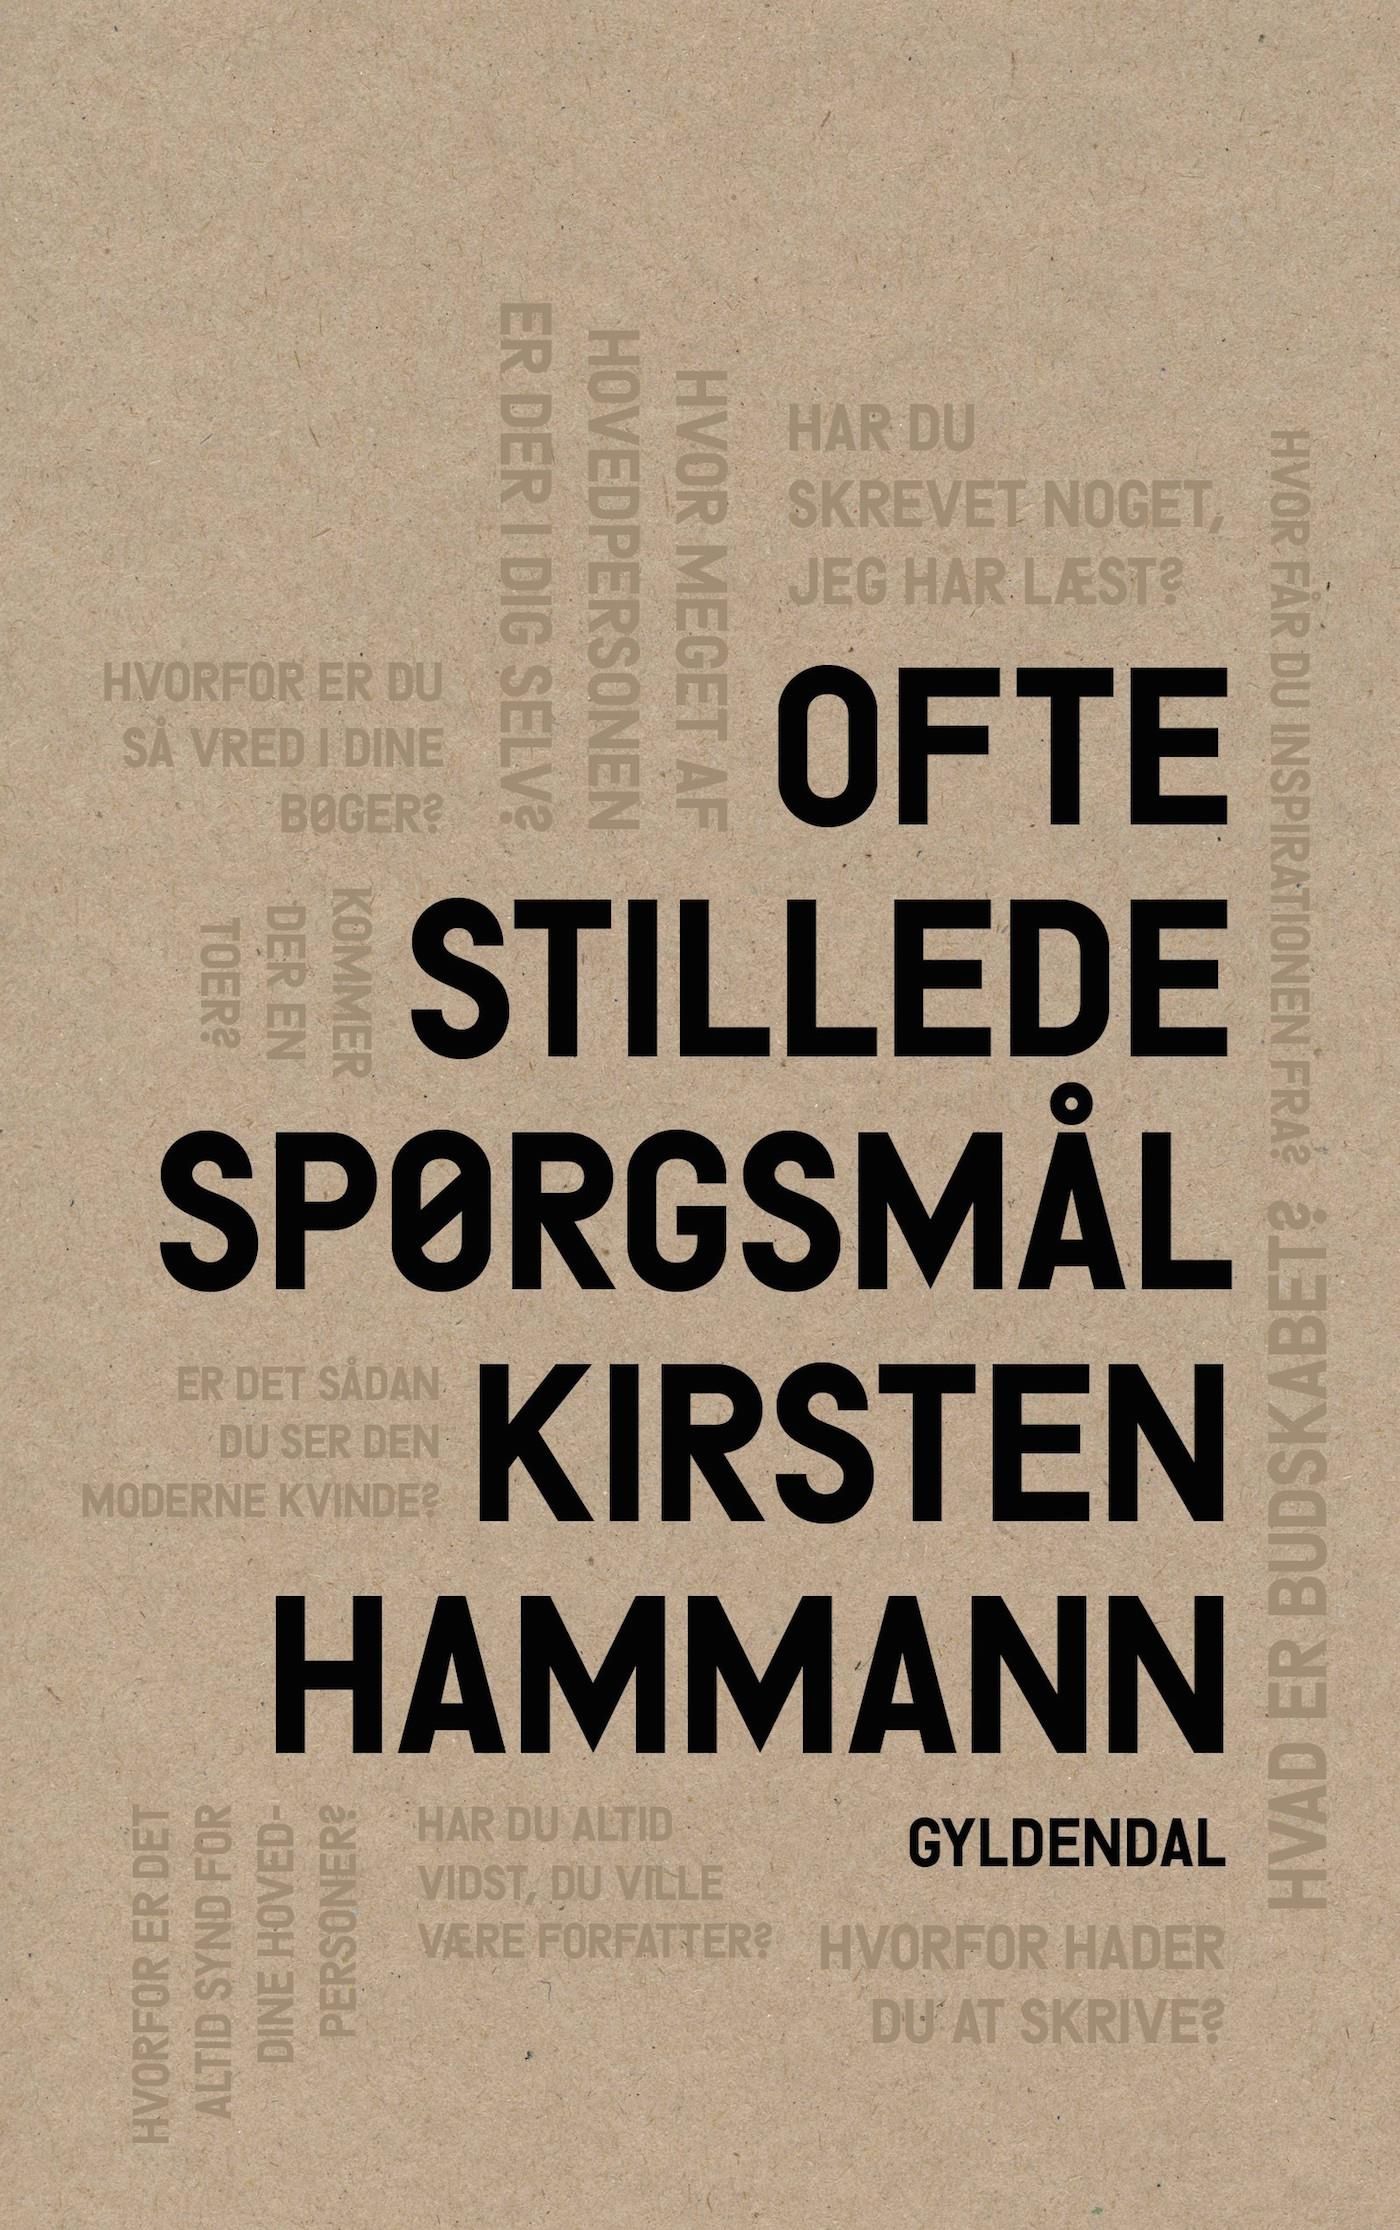 Ofte stillede spørgsmål, e-bog af Kirsten Hammann